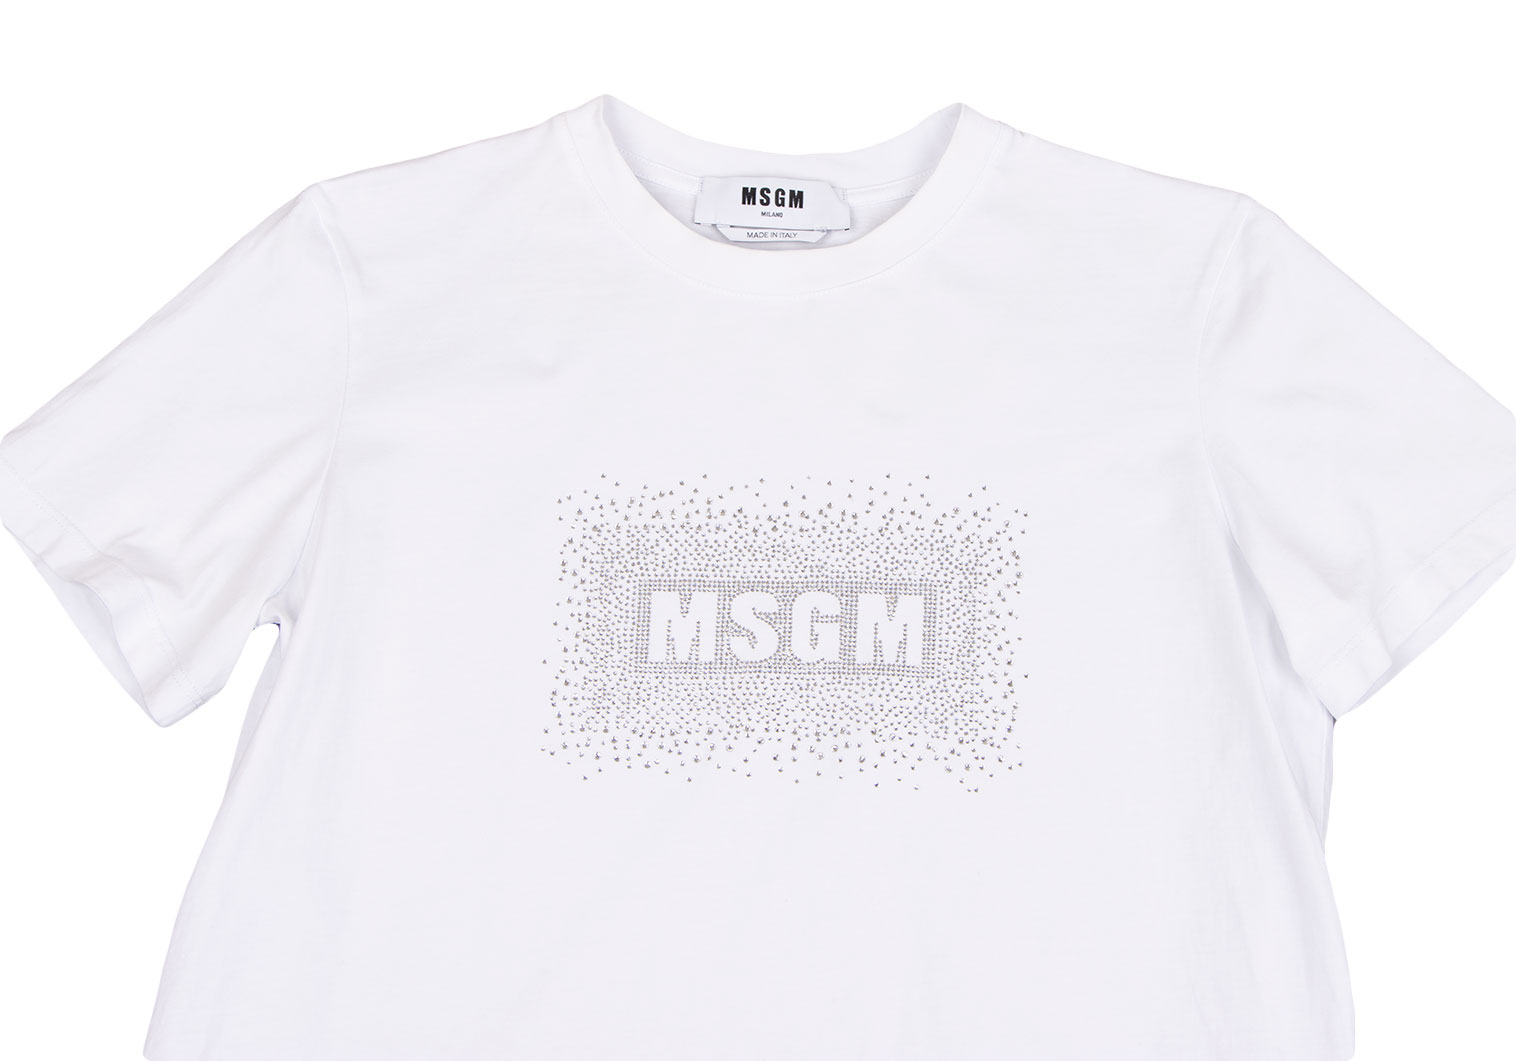 エムエスジーエムMSGM ロゴラインストーン装飾Tシャツ 白S